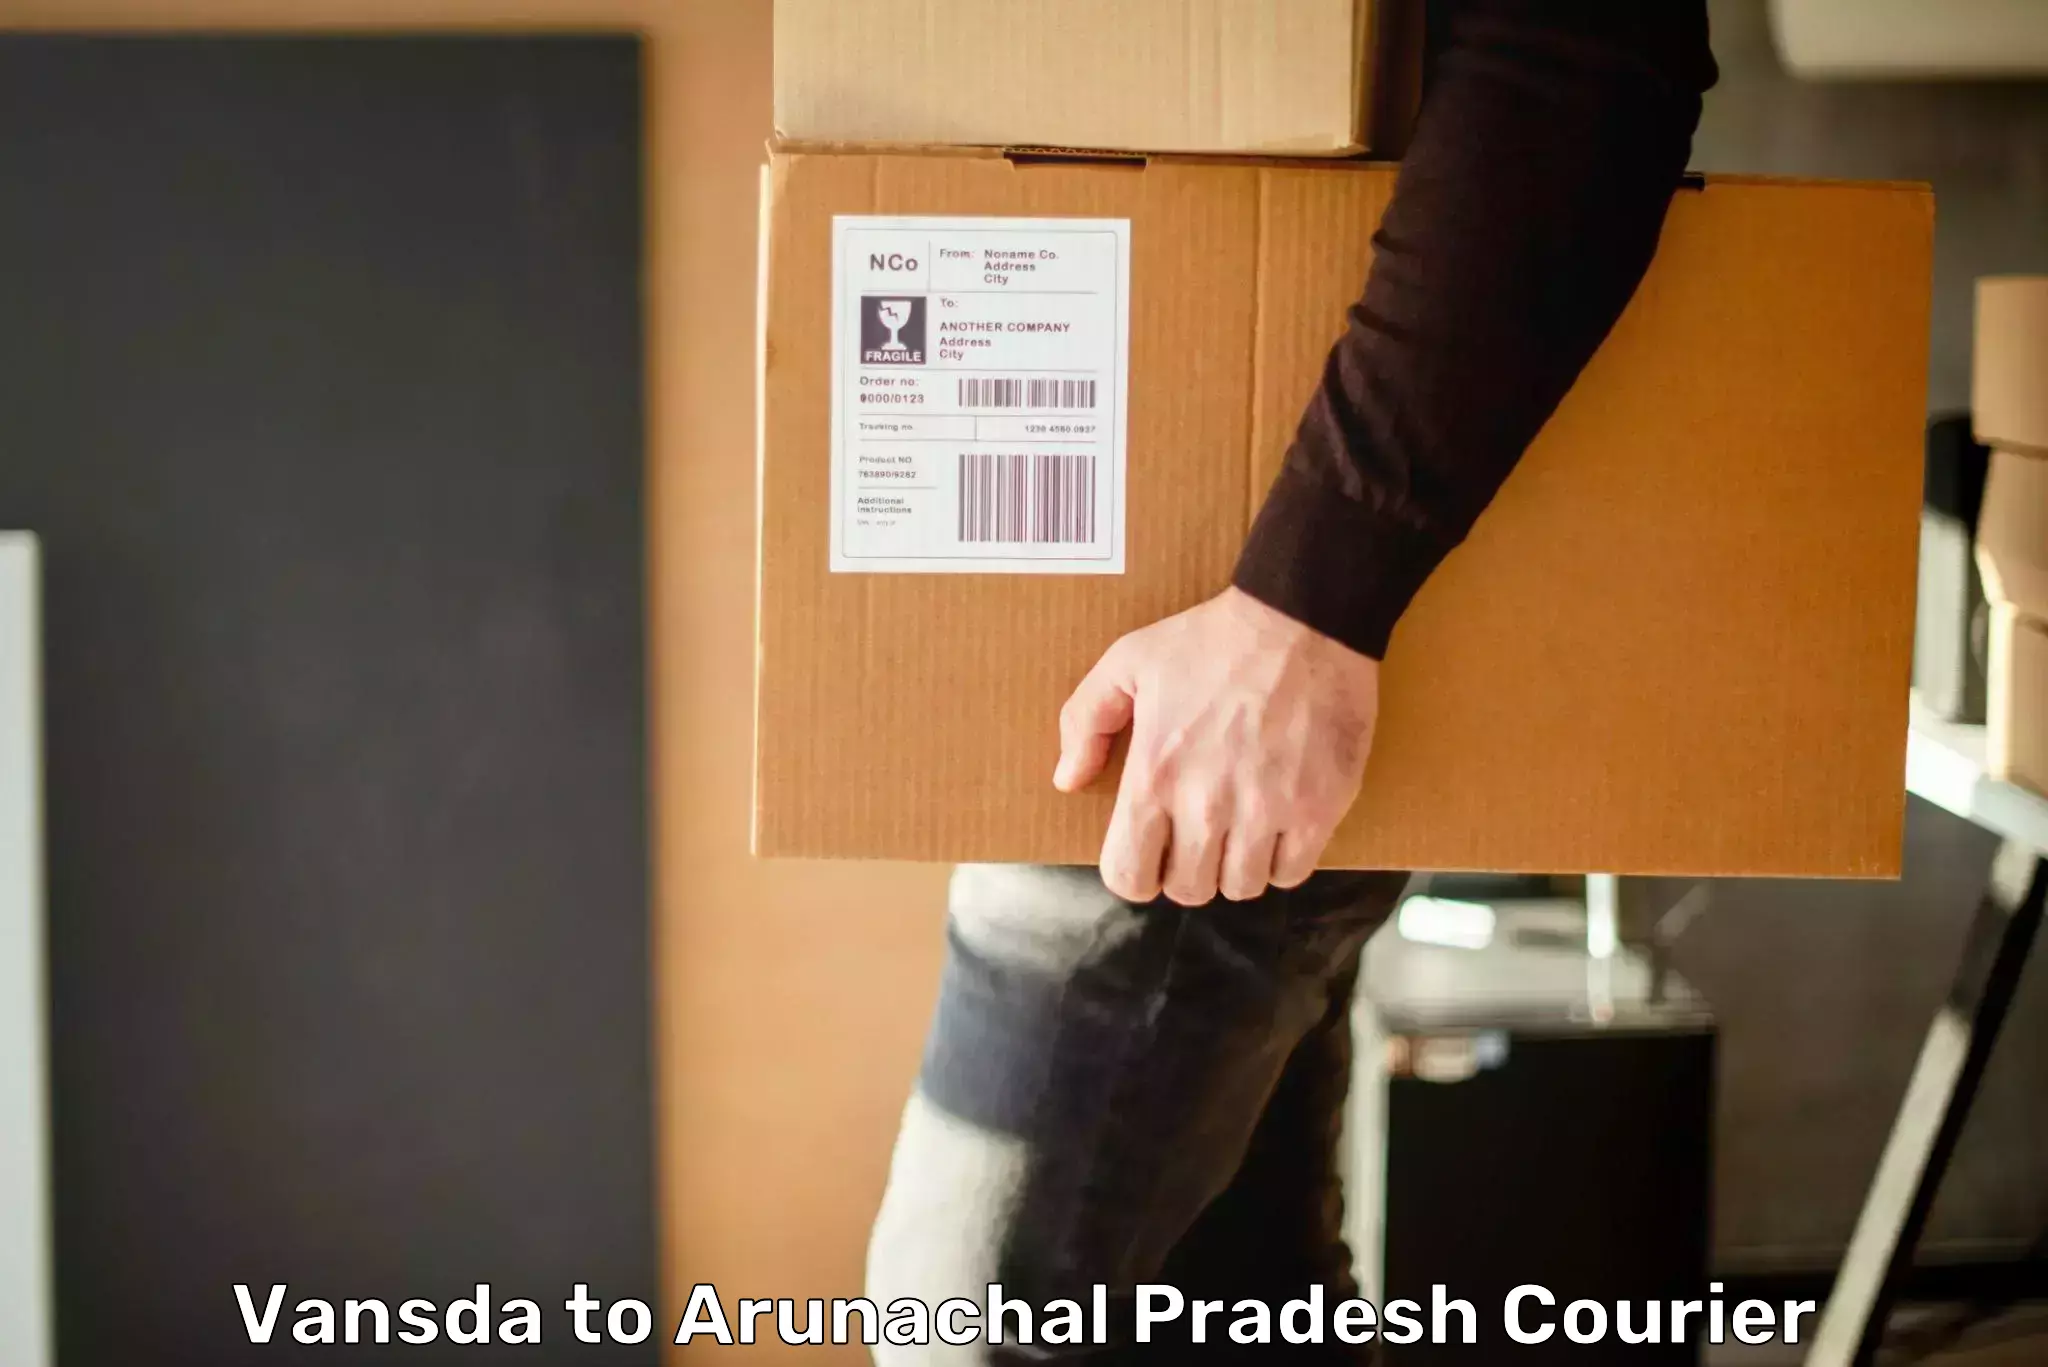 Courier service comparison Vansda to Arunachal Pradesh